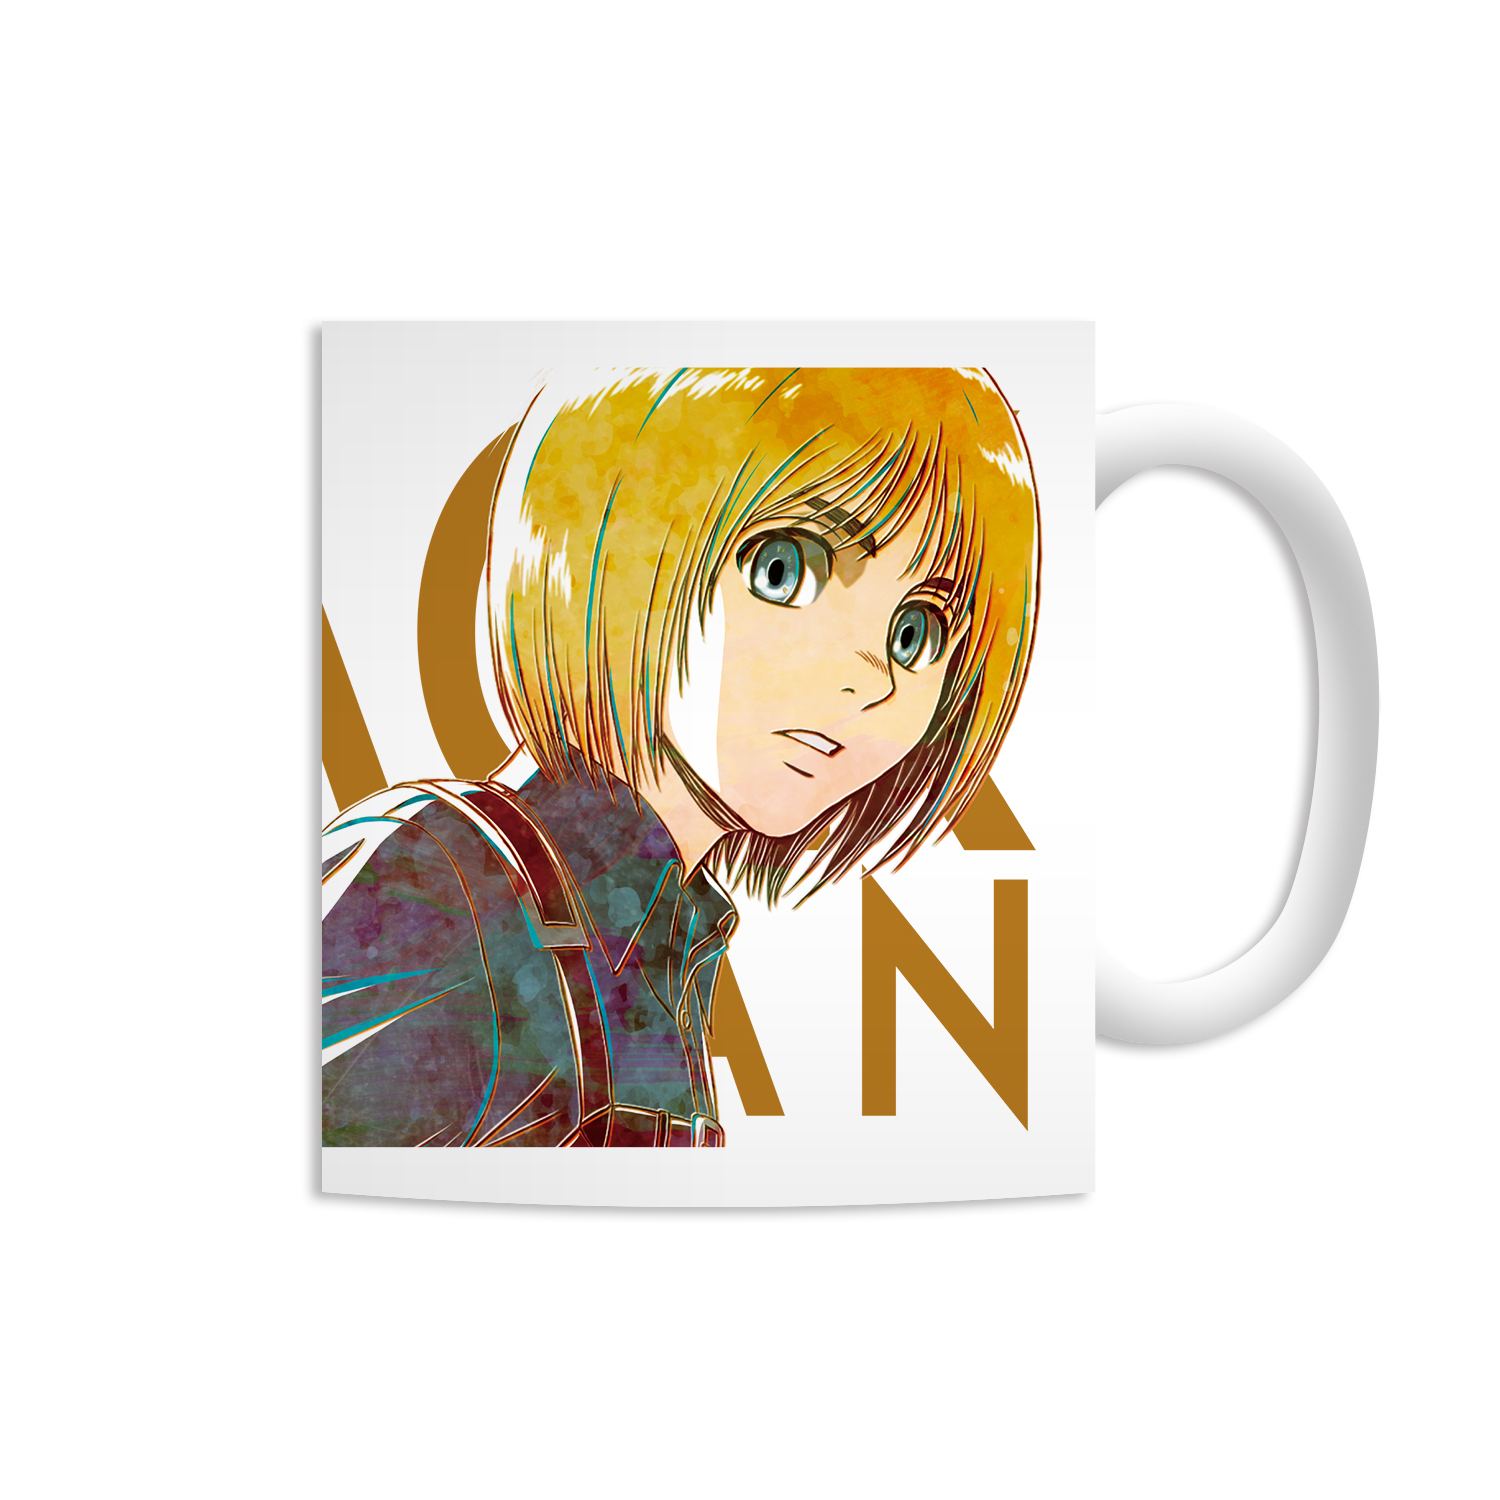 Attack on Titan Armin Coffee Mug Cup Anime Mug NEW